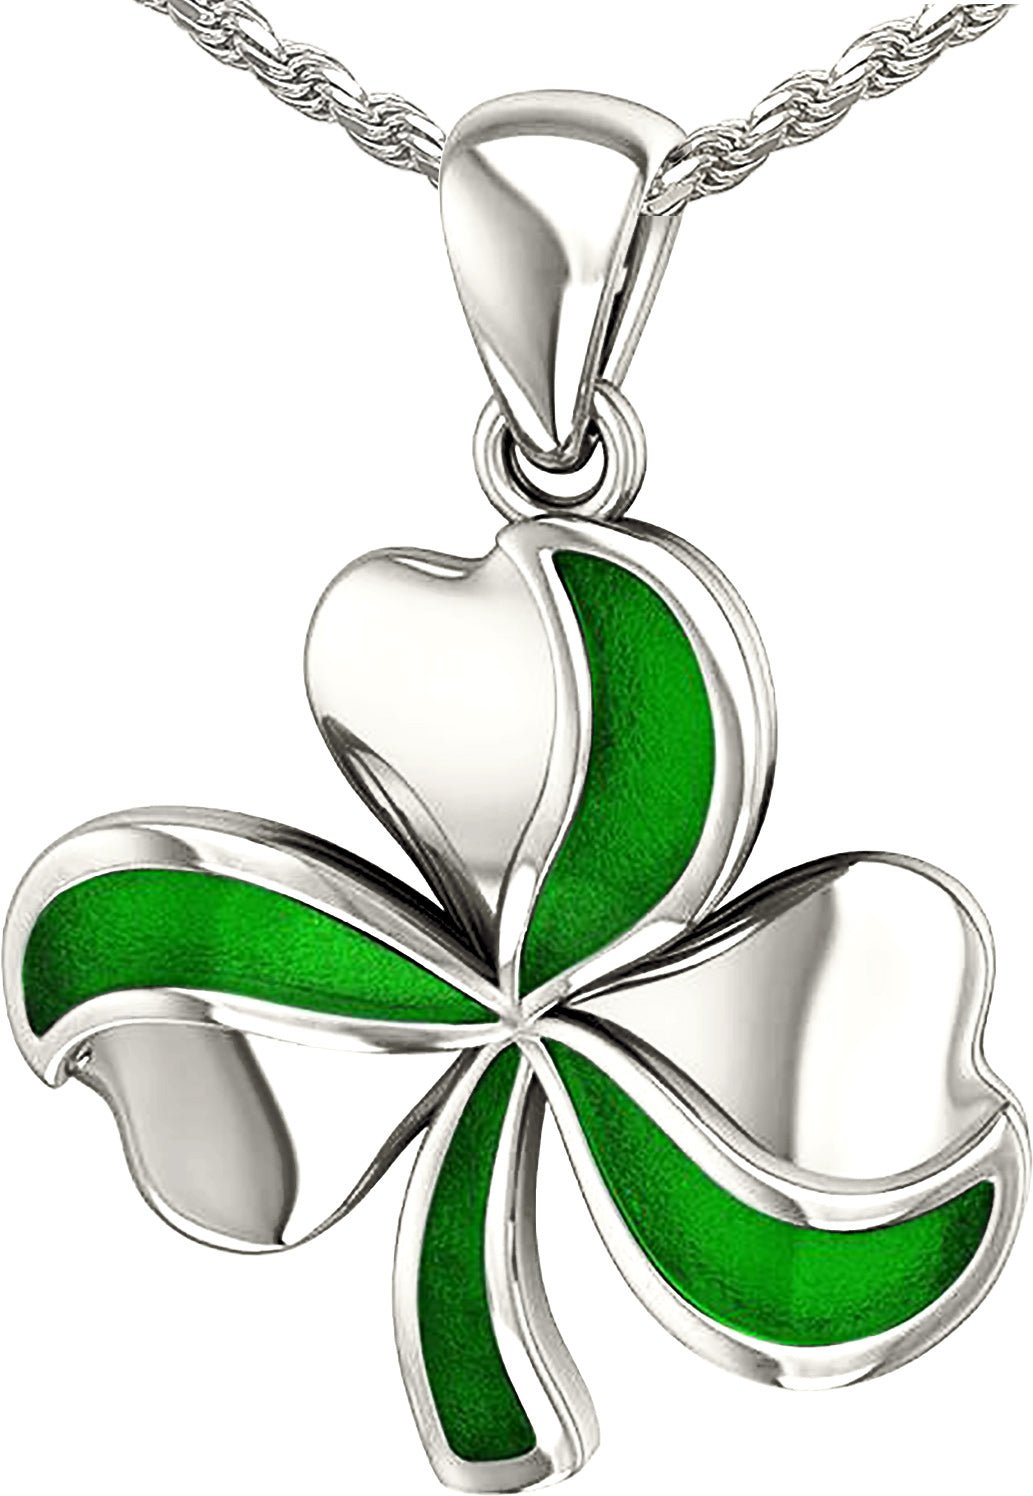 Lucky Shamrock Celtic Clover necklace,Celtic Knot Shamrock pendant,Trinity  knot | eBay